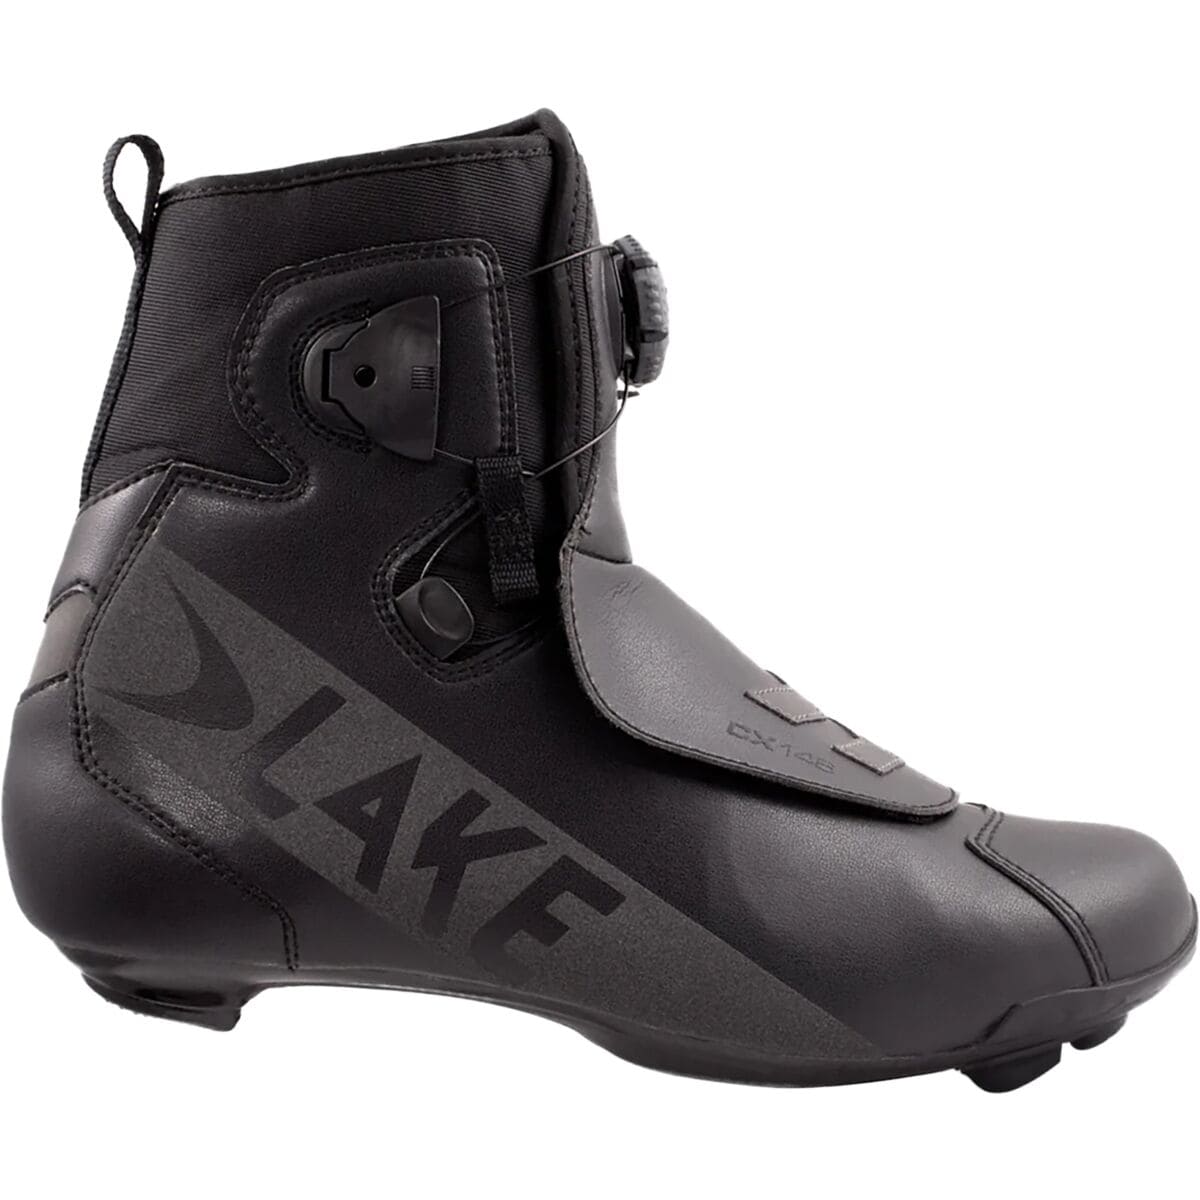 Lake CX146 Cycling Shoe - Men's